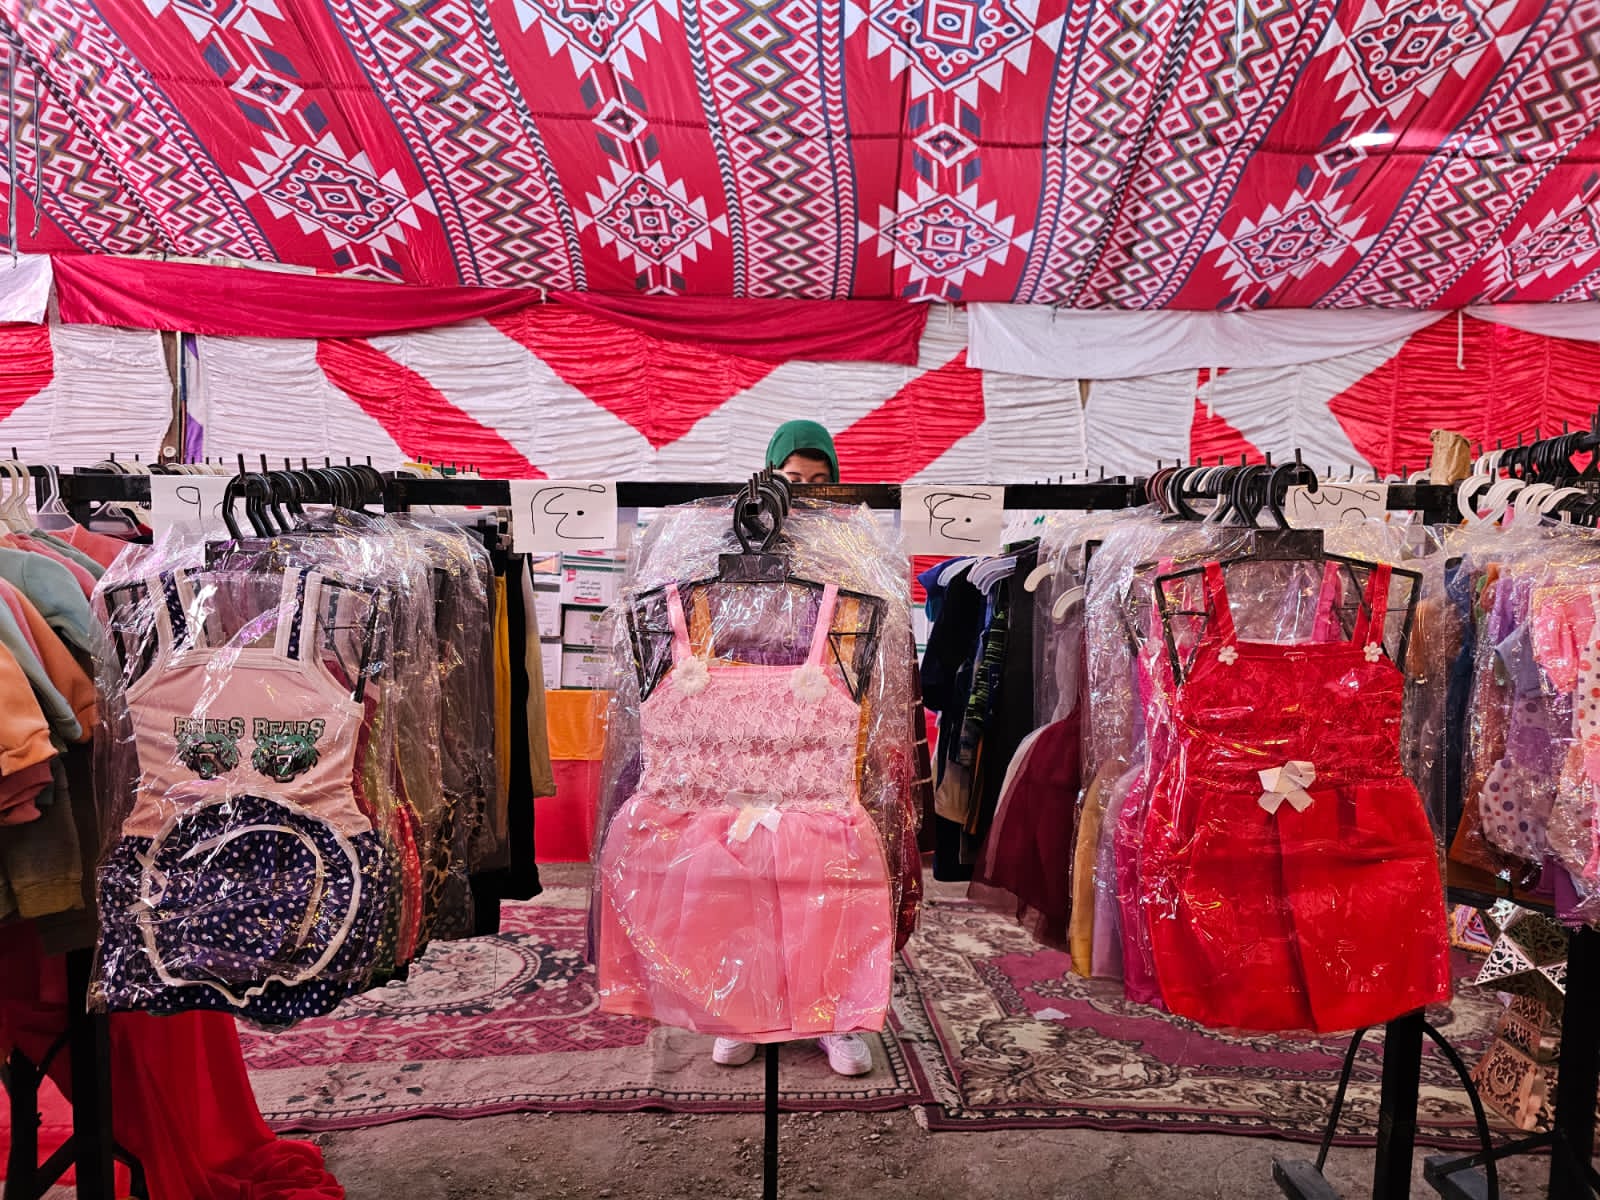 الملابس بأسعار مخفضة في معرض أهلا رمضان بالطالبية (2)